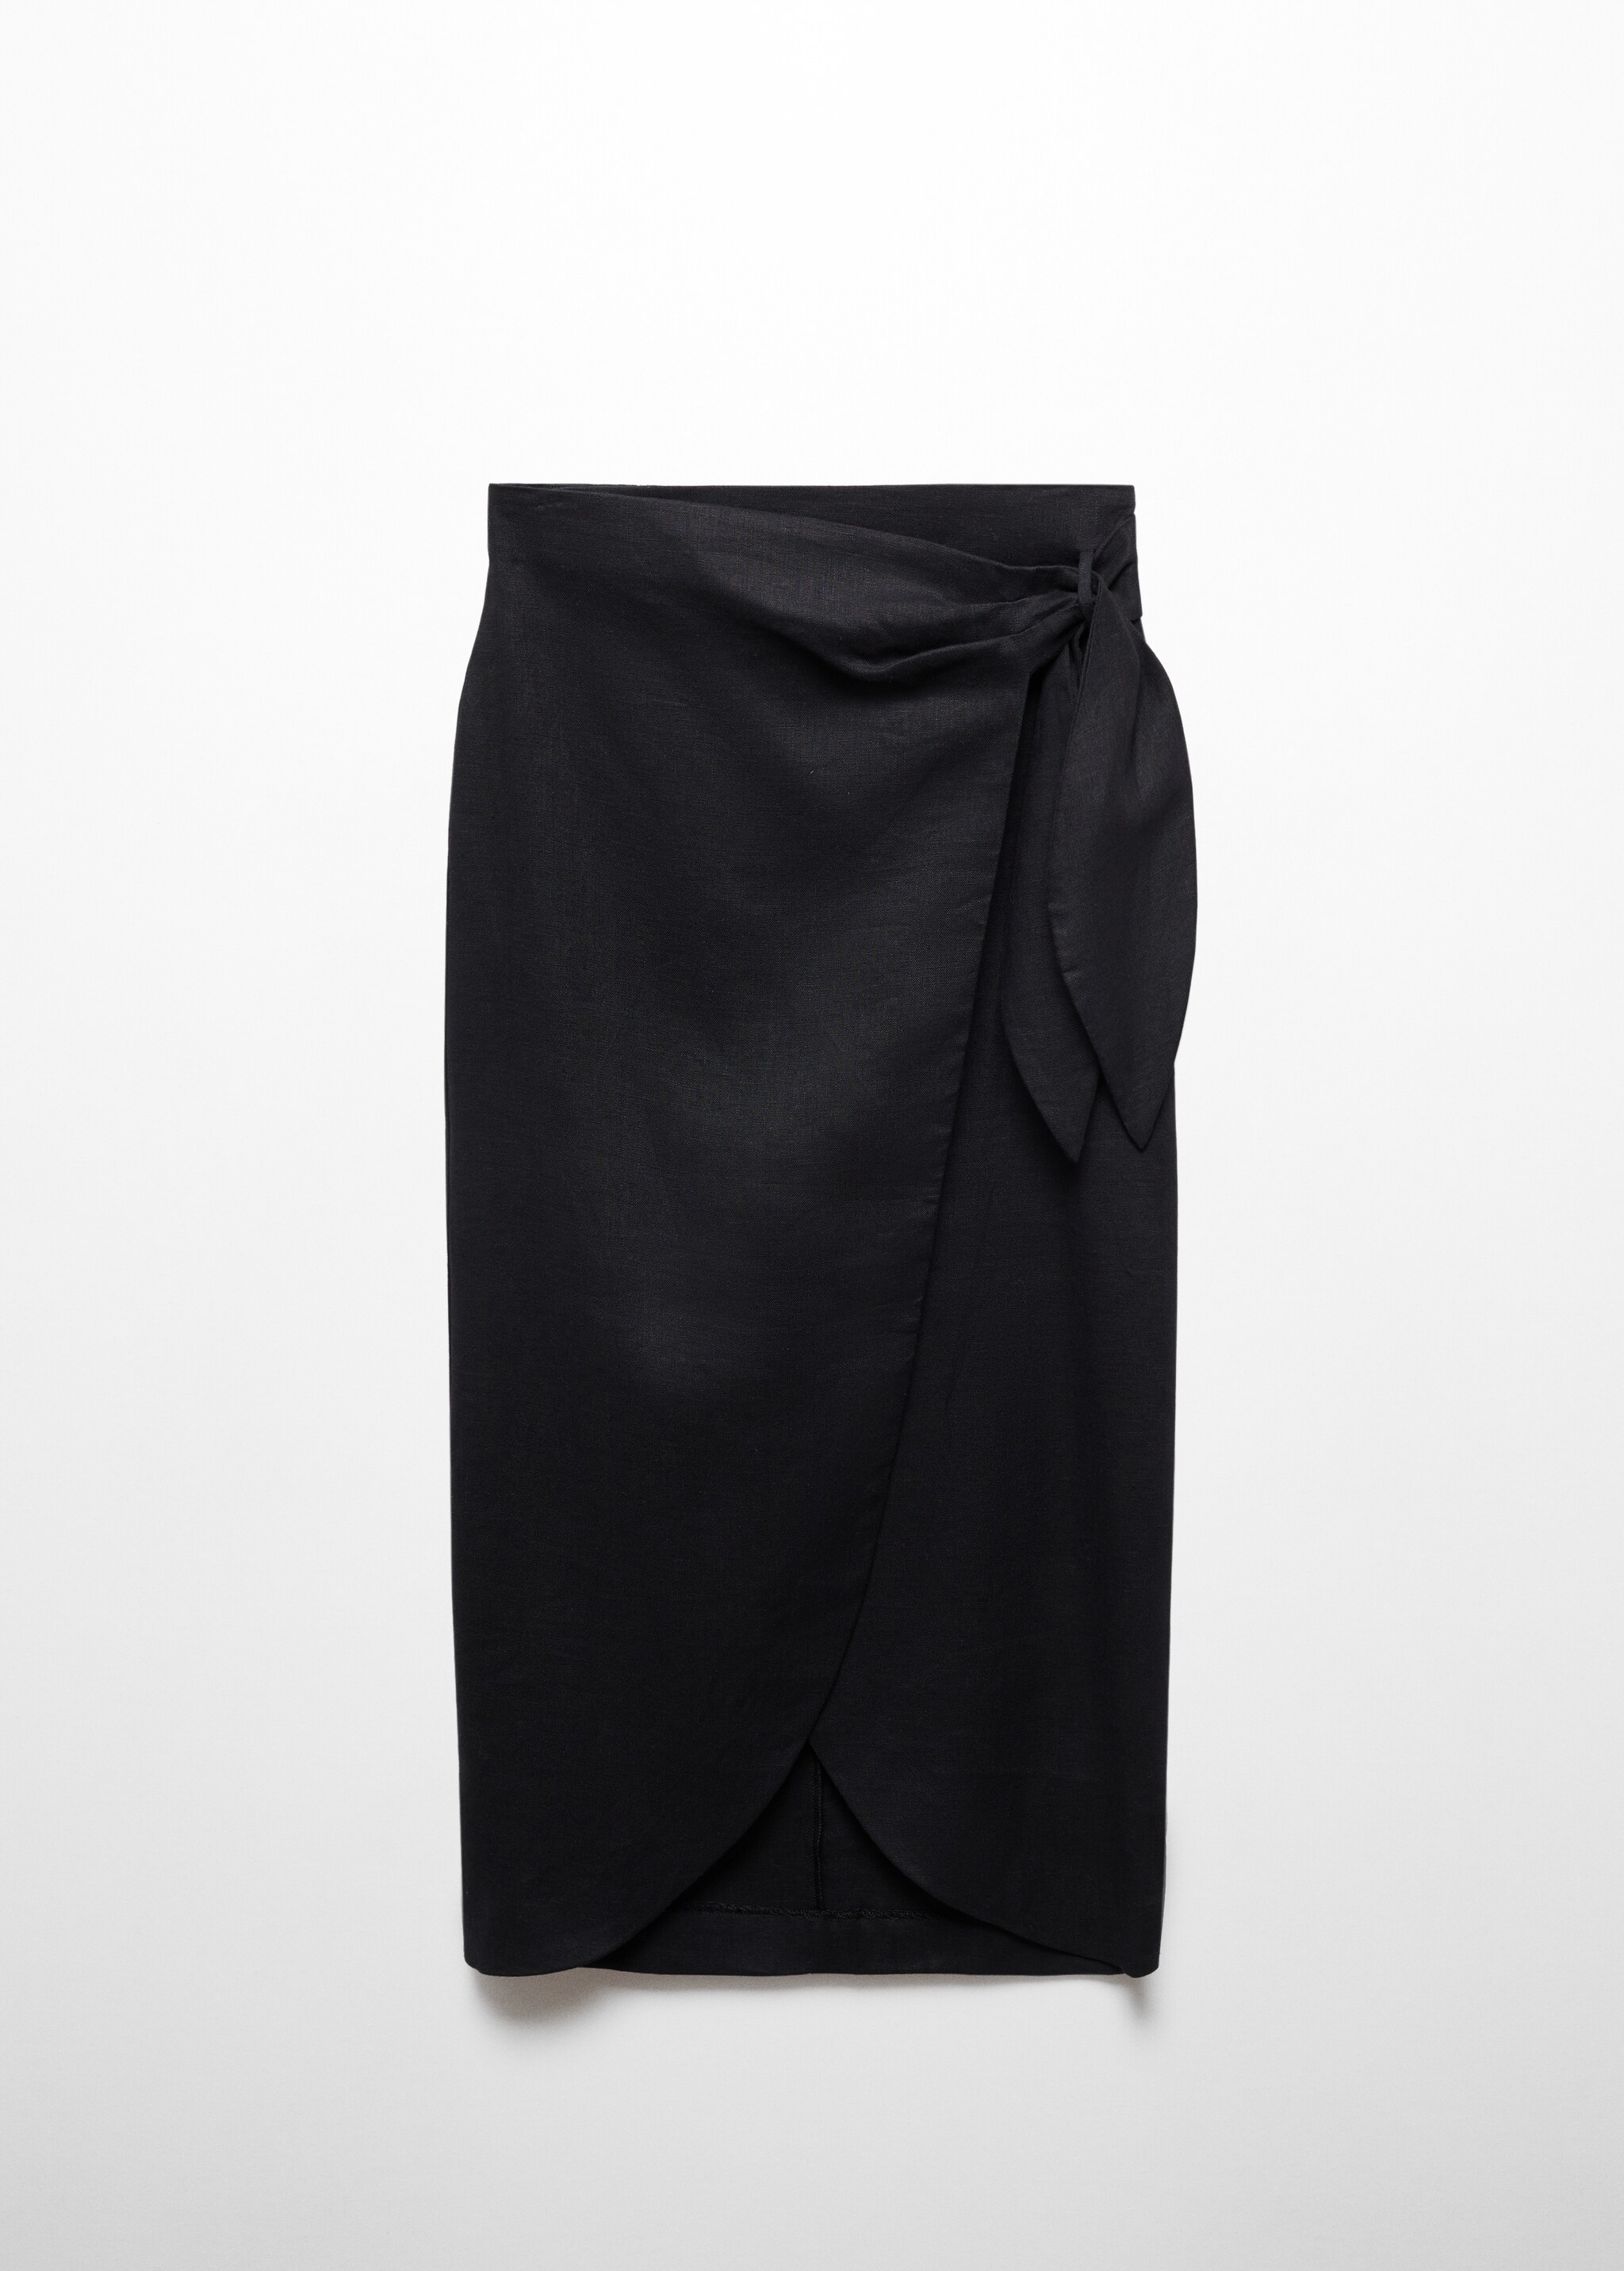 Falda pareo lino - Artículo sin modelo